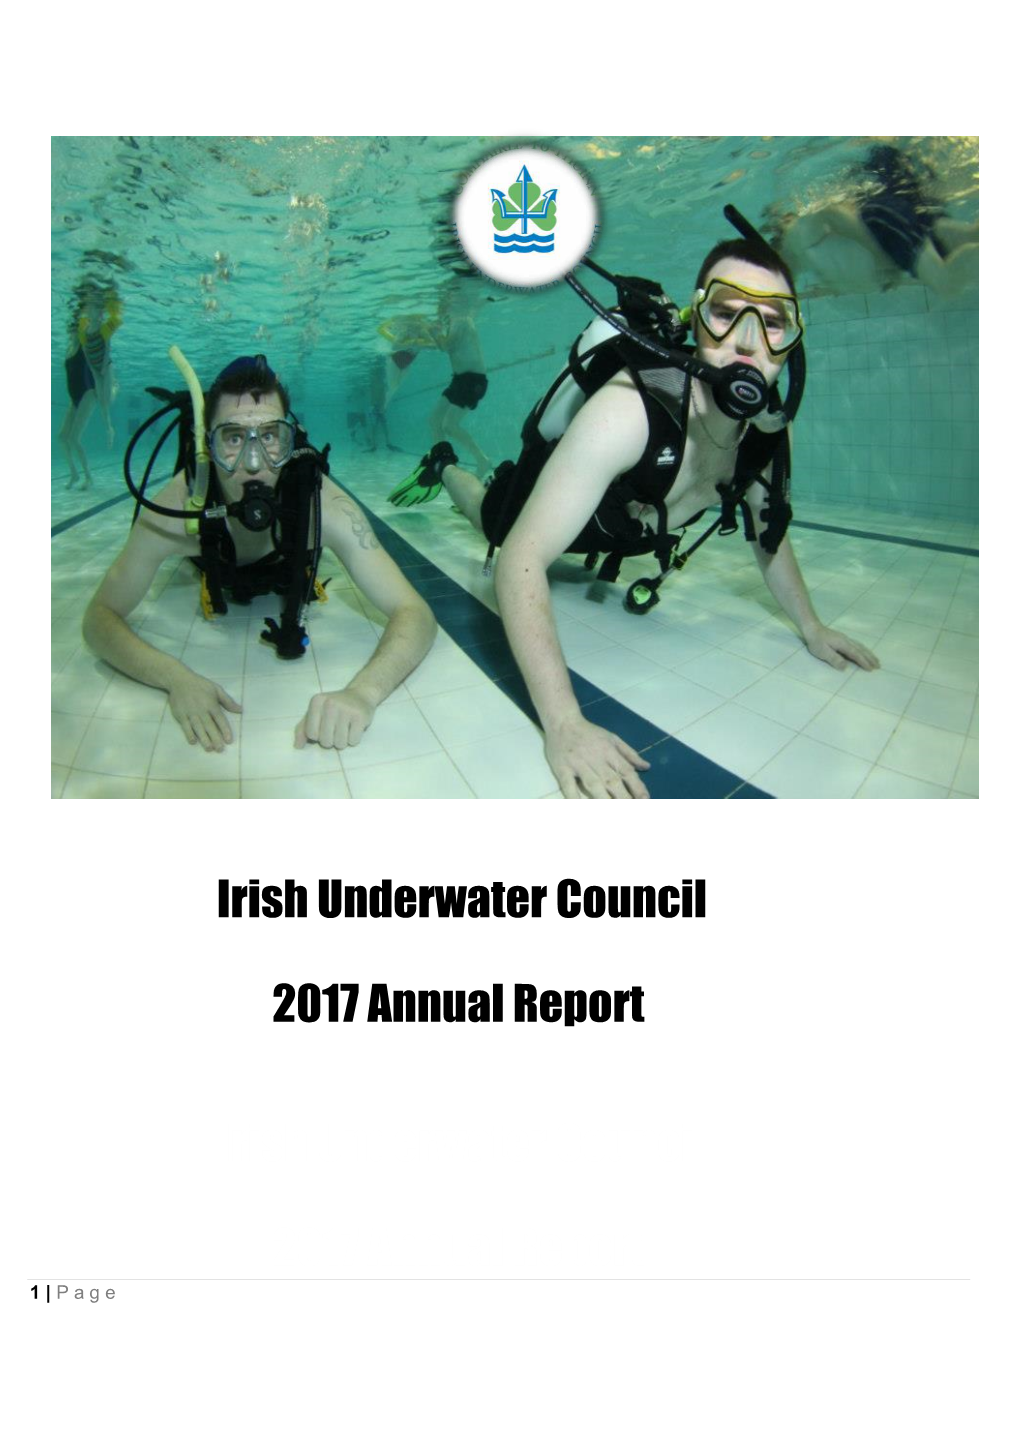 IUC 2017 Annual Report